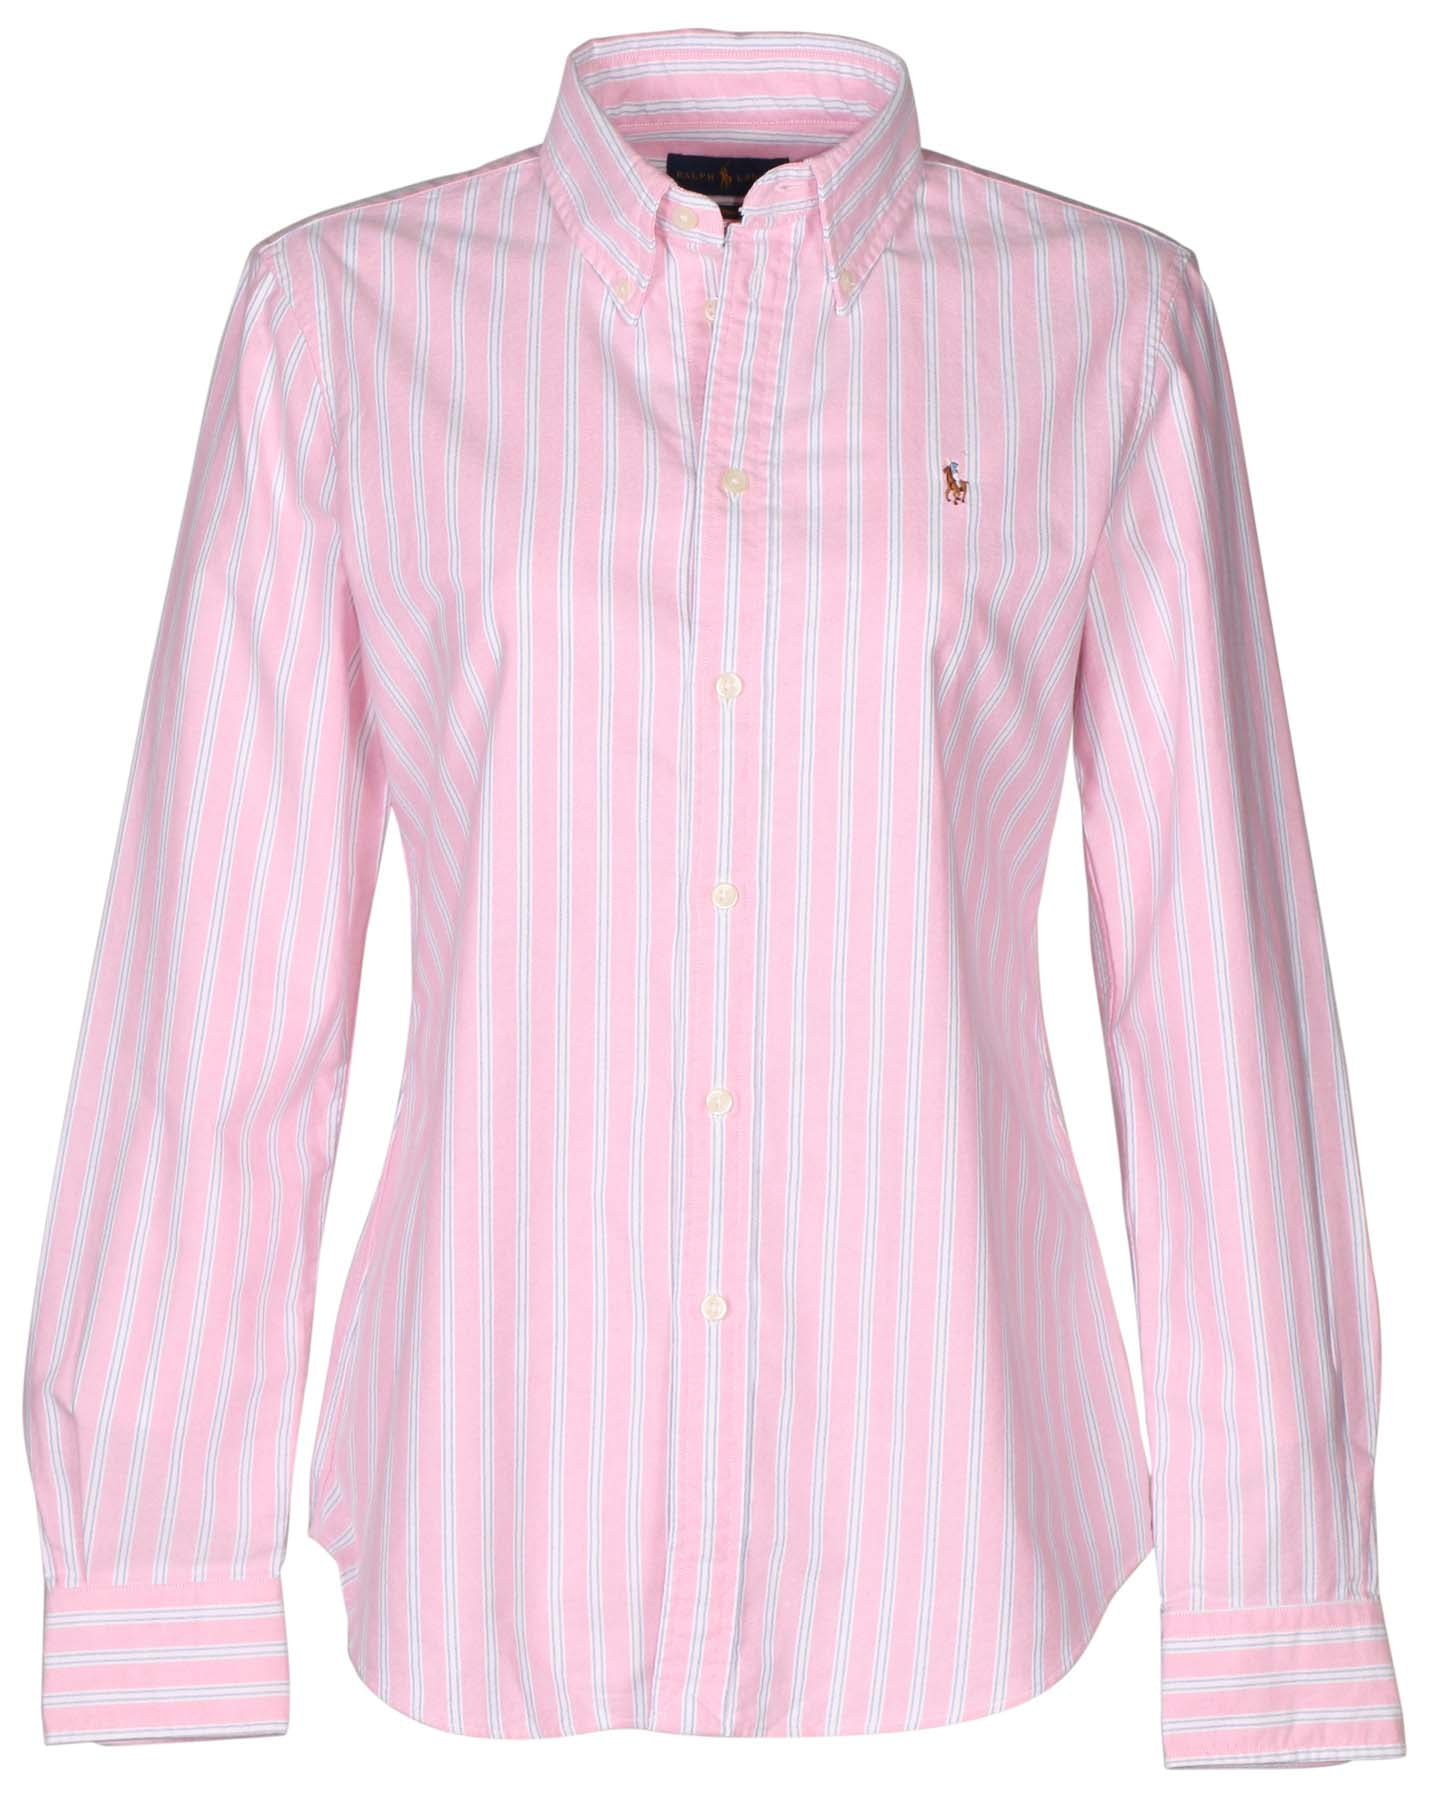 polo ralph lauren women's custom fit oxford button down shirt